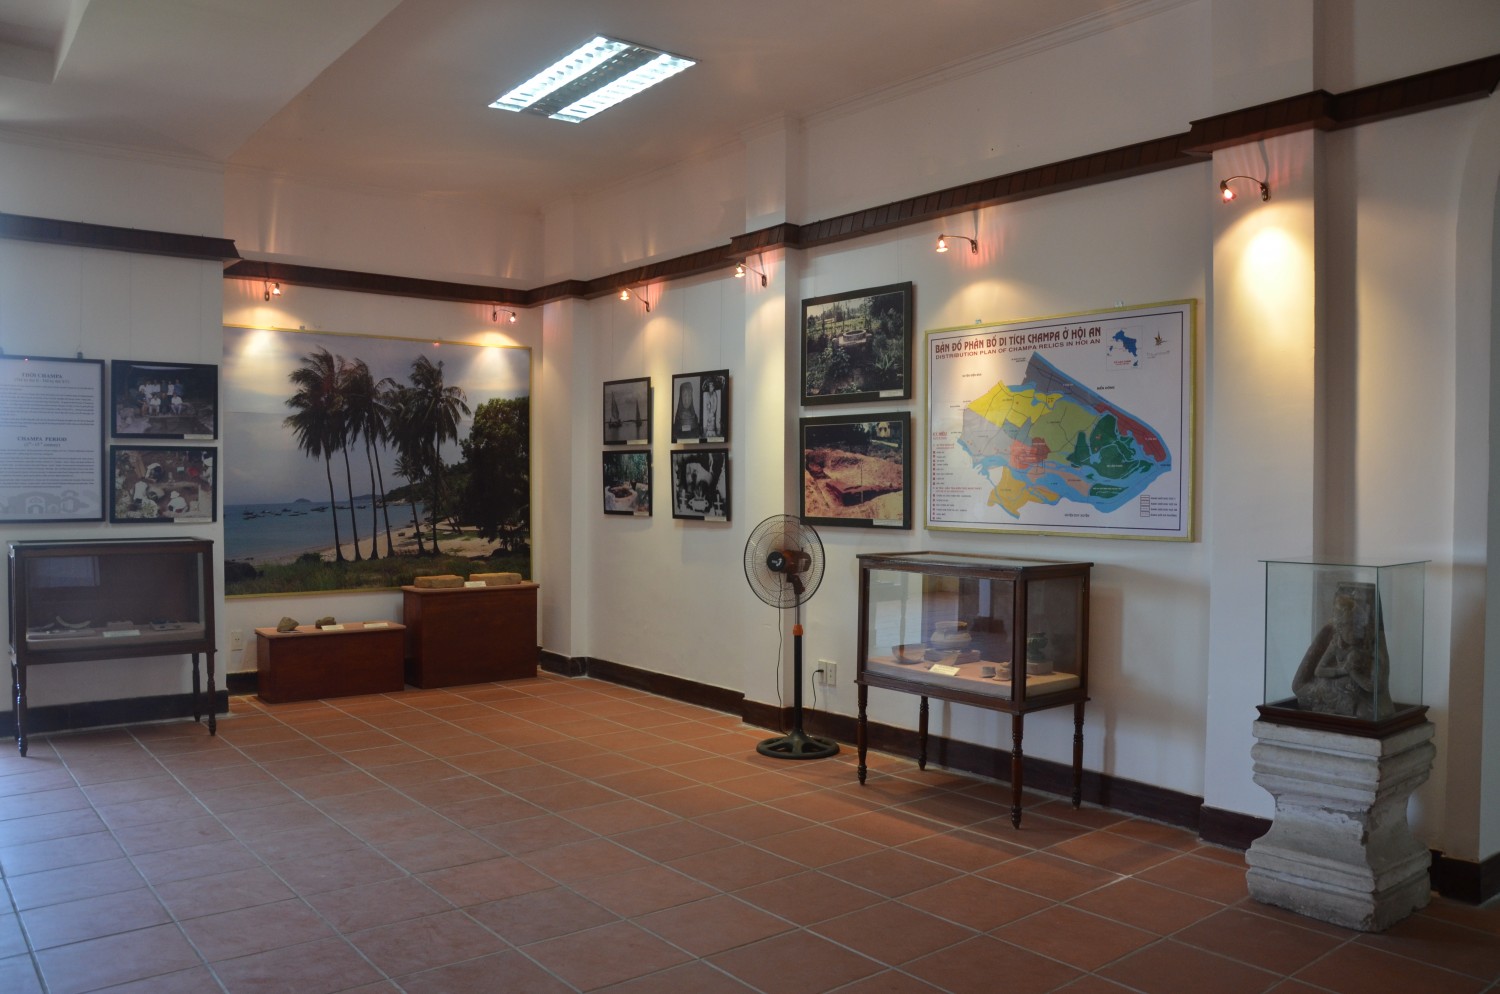 Bảo tàng lịch sử văn hóa Hội An - Minh chứng sống động của thương cảng phồn thịnh một thời 12